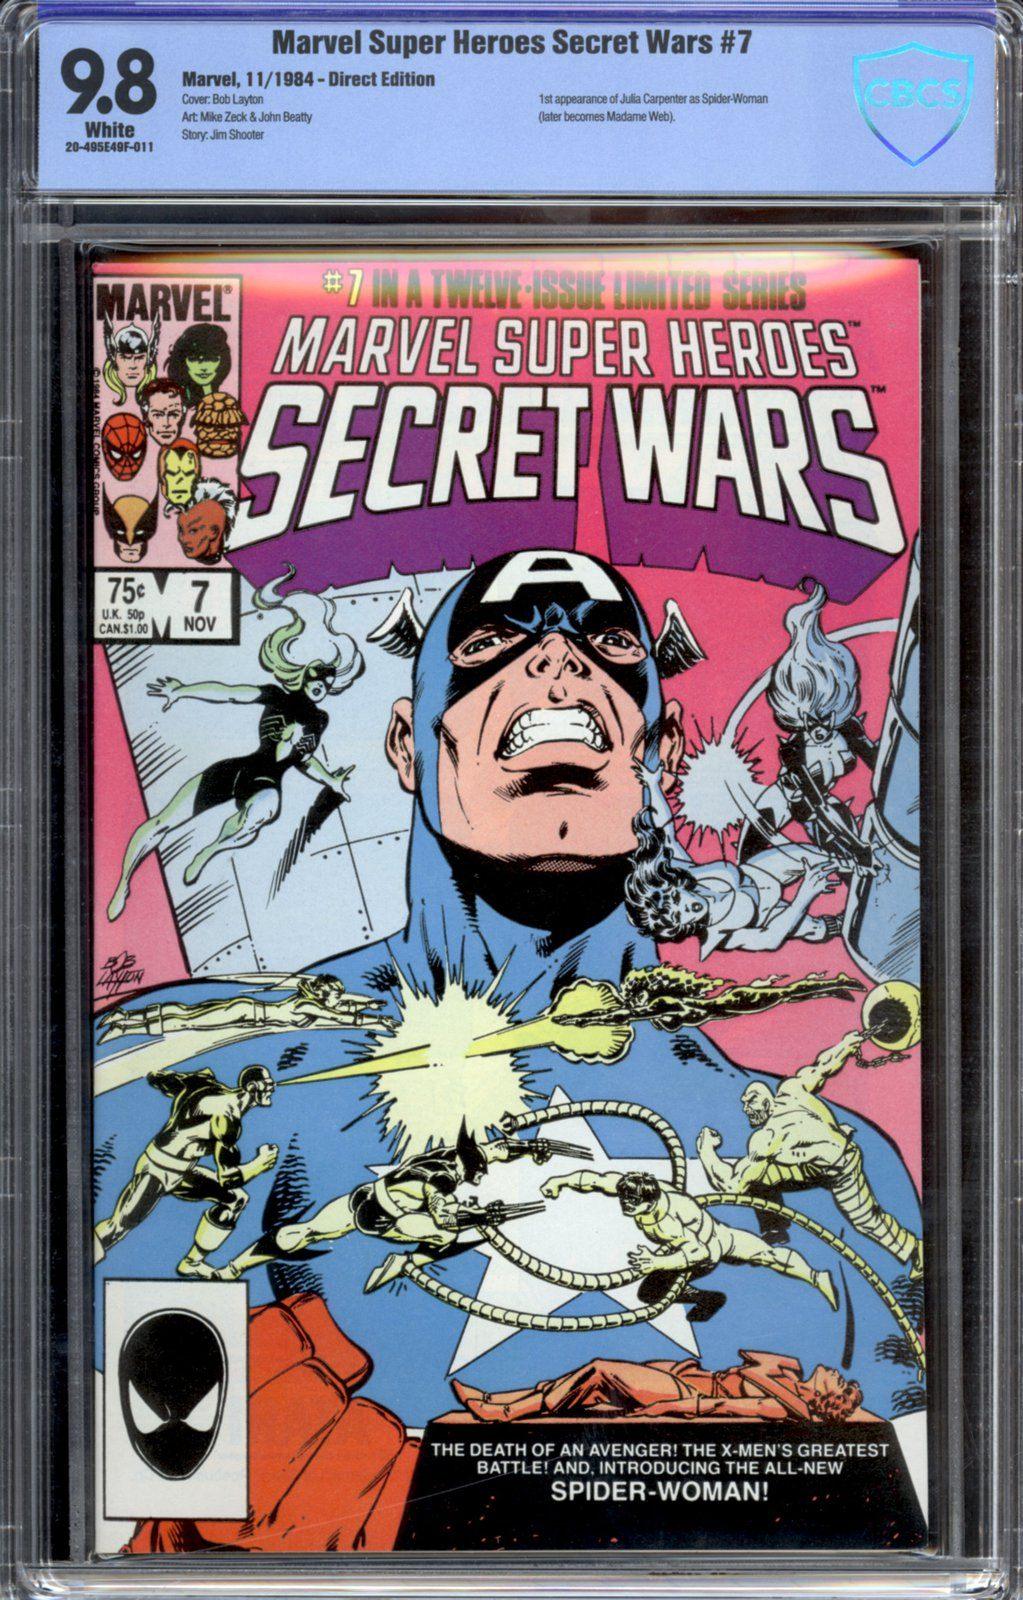 MARVEL SUPER HEROES SECRET WARS #7 CBCS 9.8 - PCKComics.com